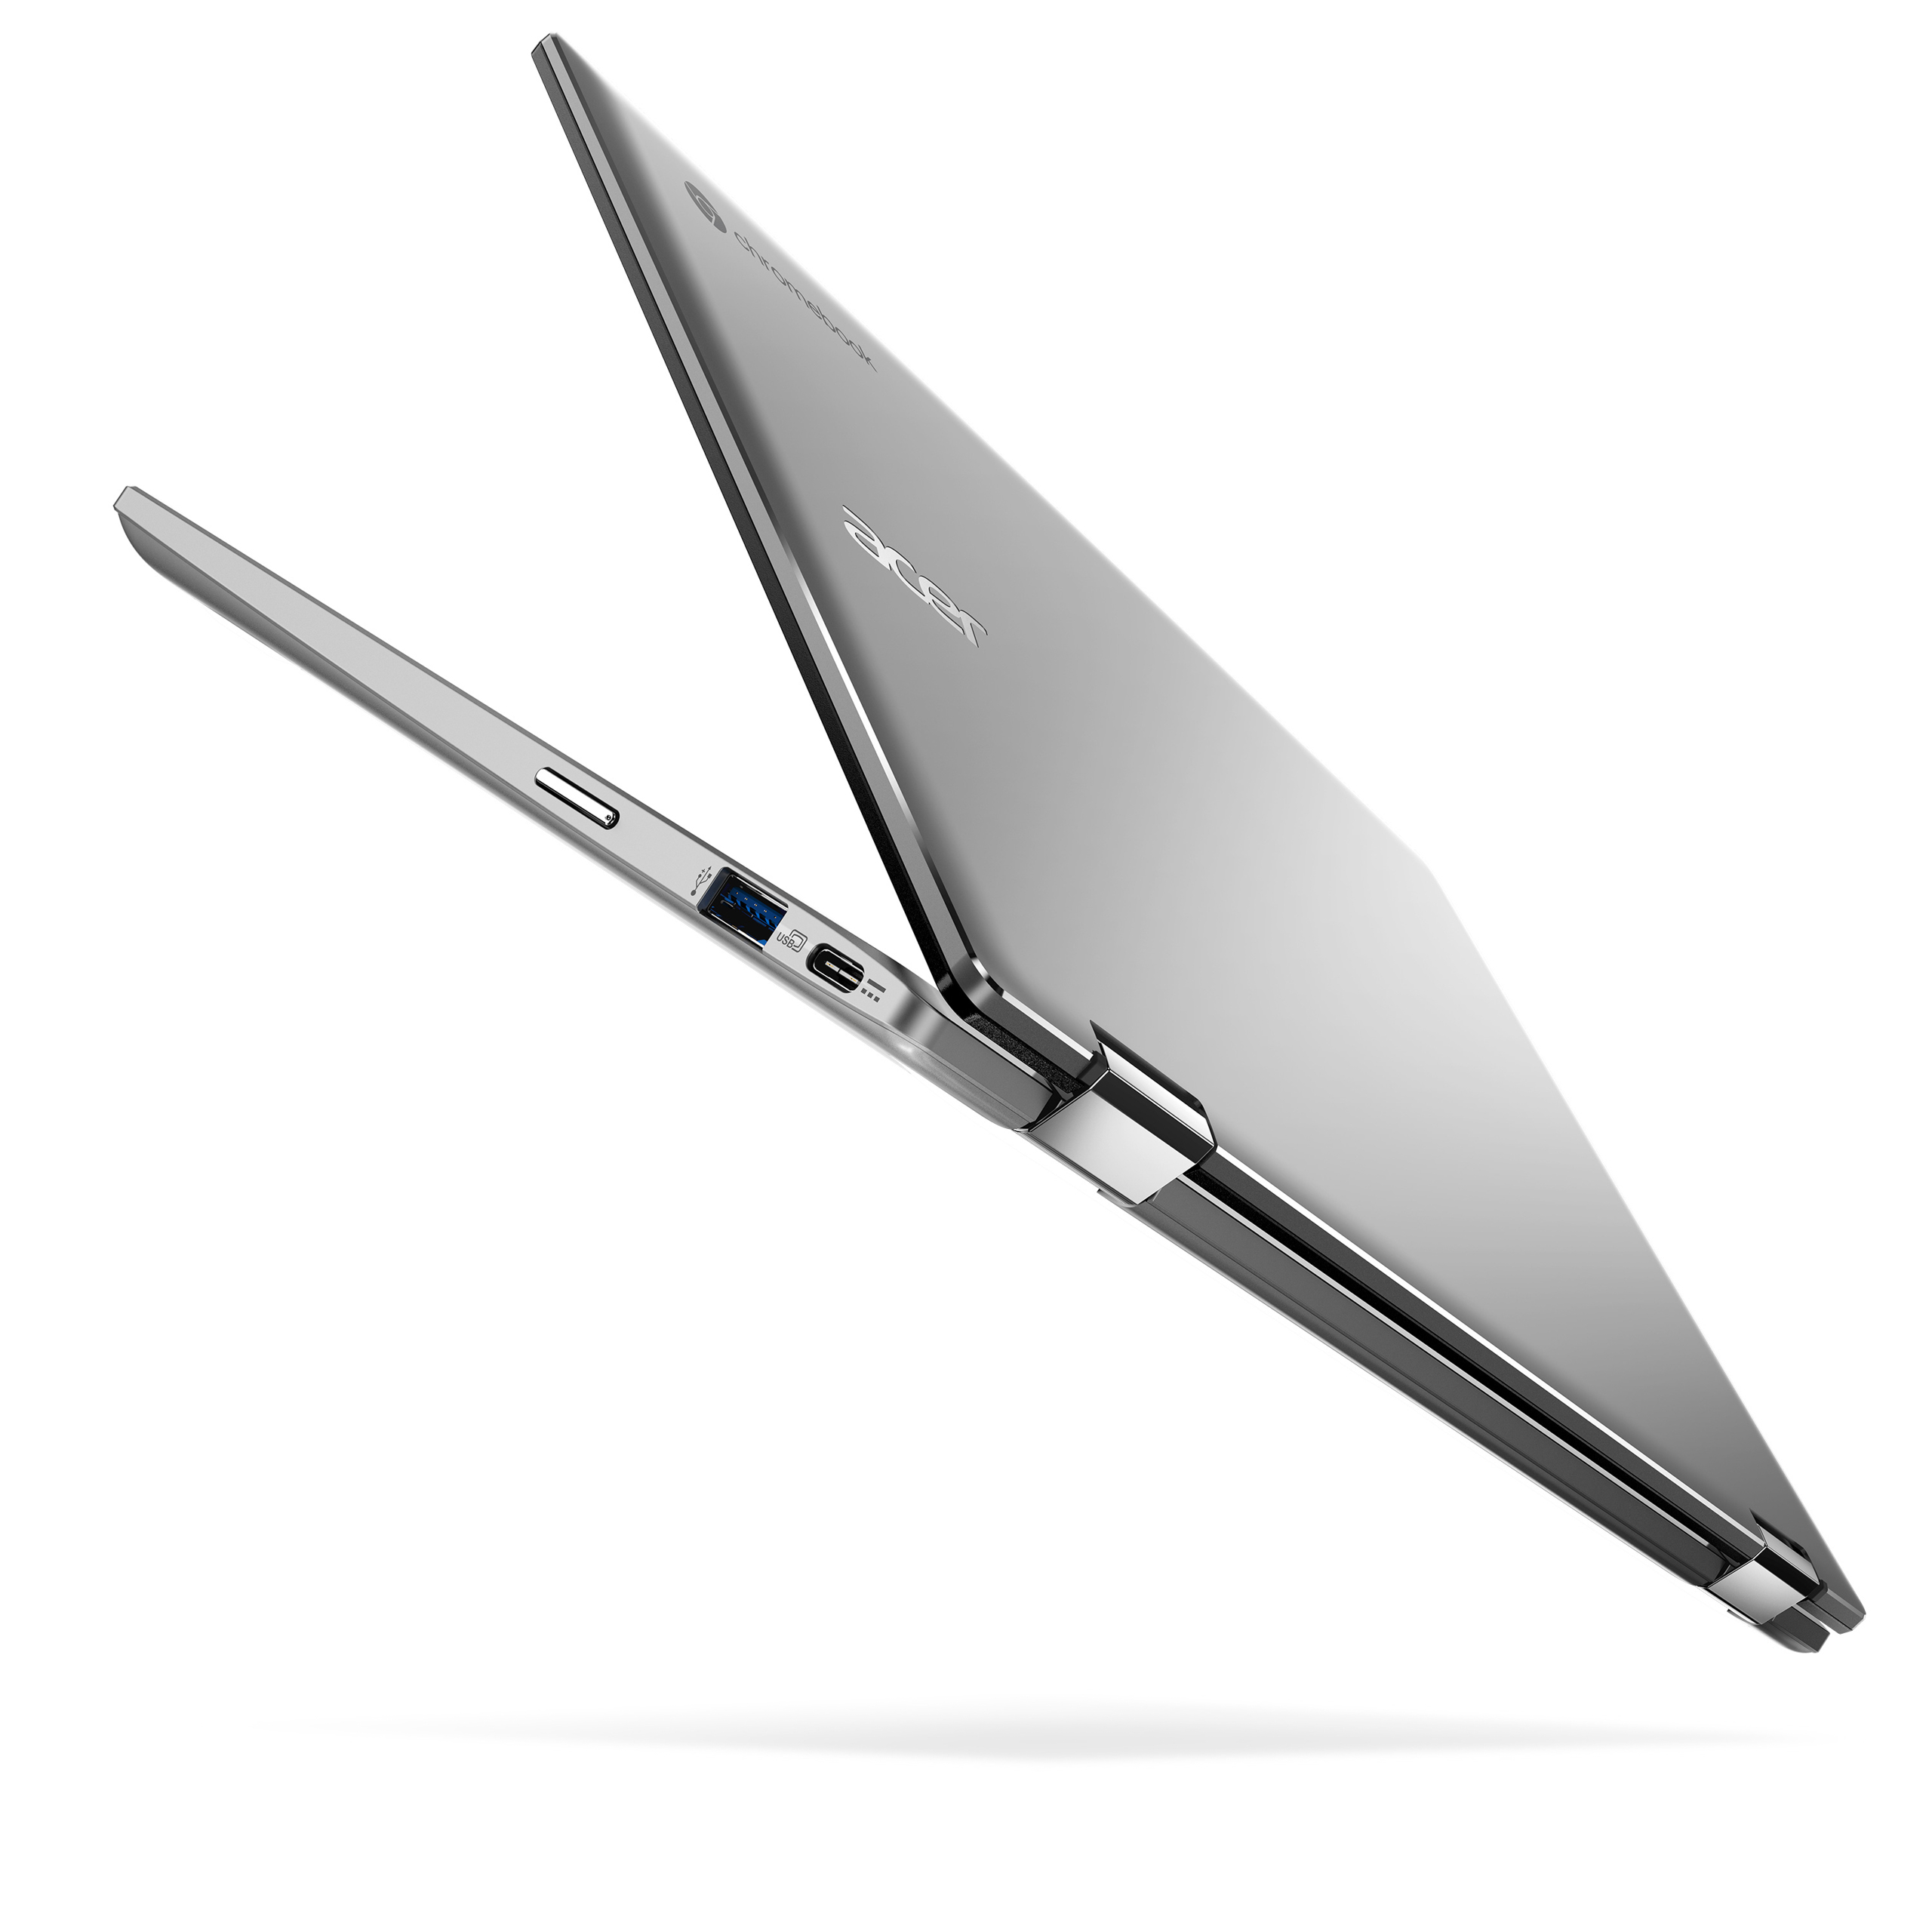 Acer ra mắt 4 mẫu laptop Chromebook màn hình lớn cho làm việc, học tập và giải trí